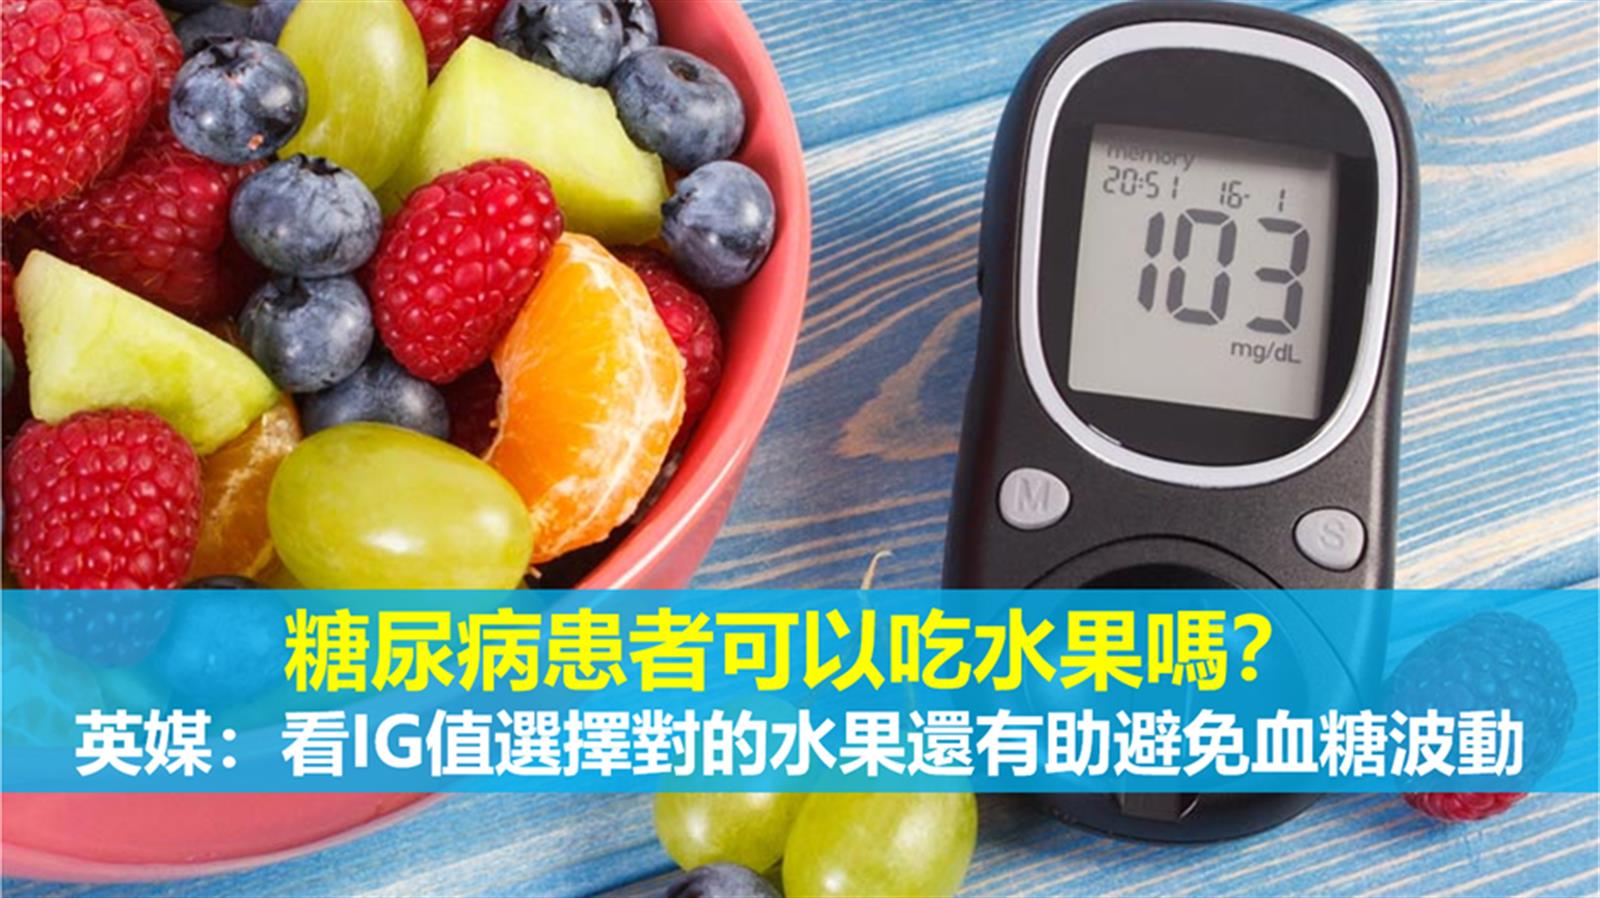 糖尿病患者可以吃水果嗎？ 英媒：看IG值選擇對的水果還有助避免血糖波動